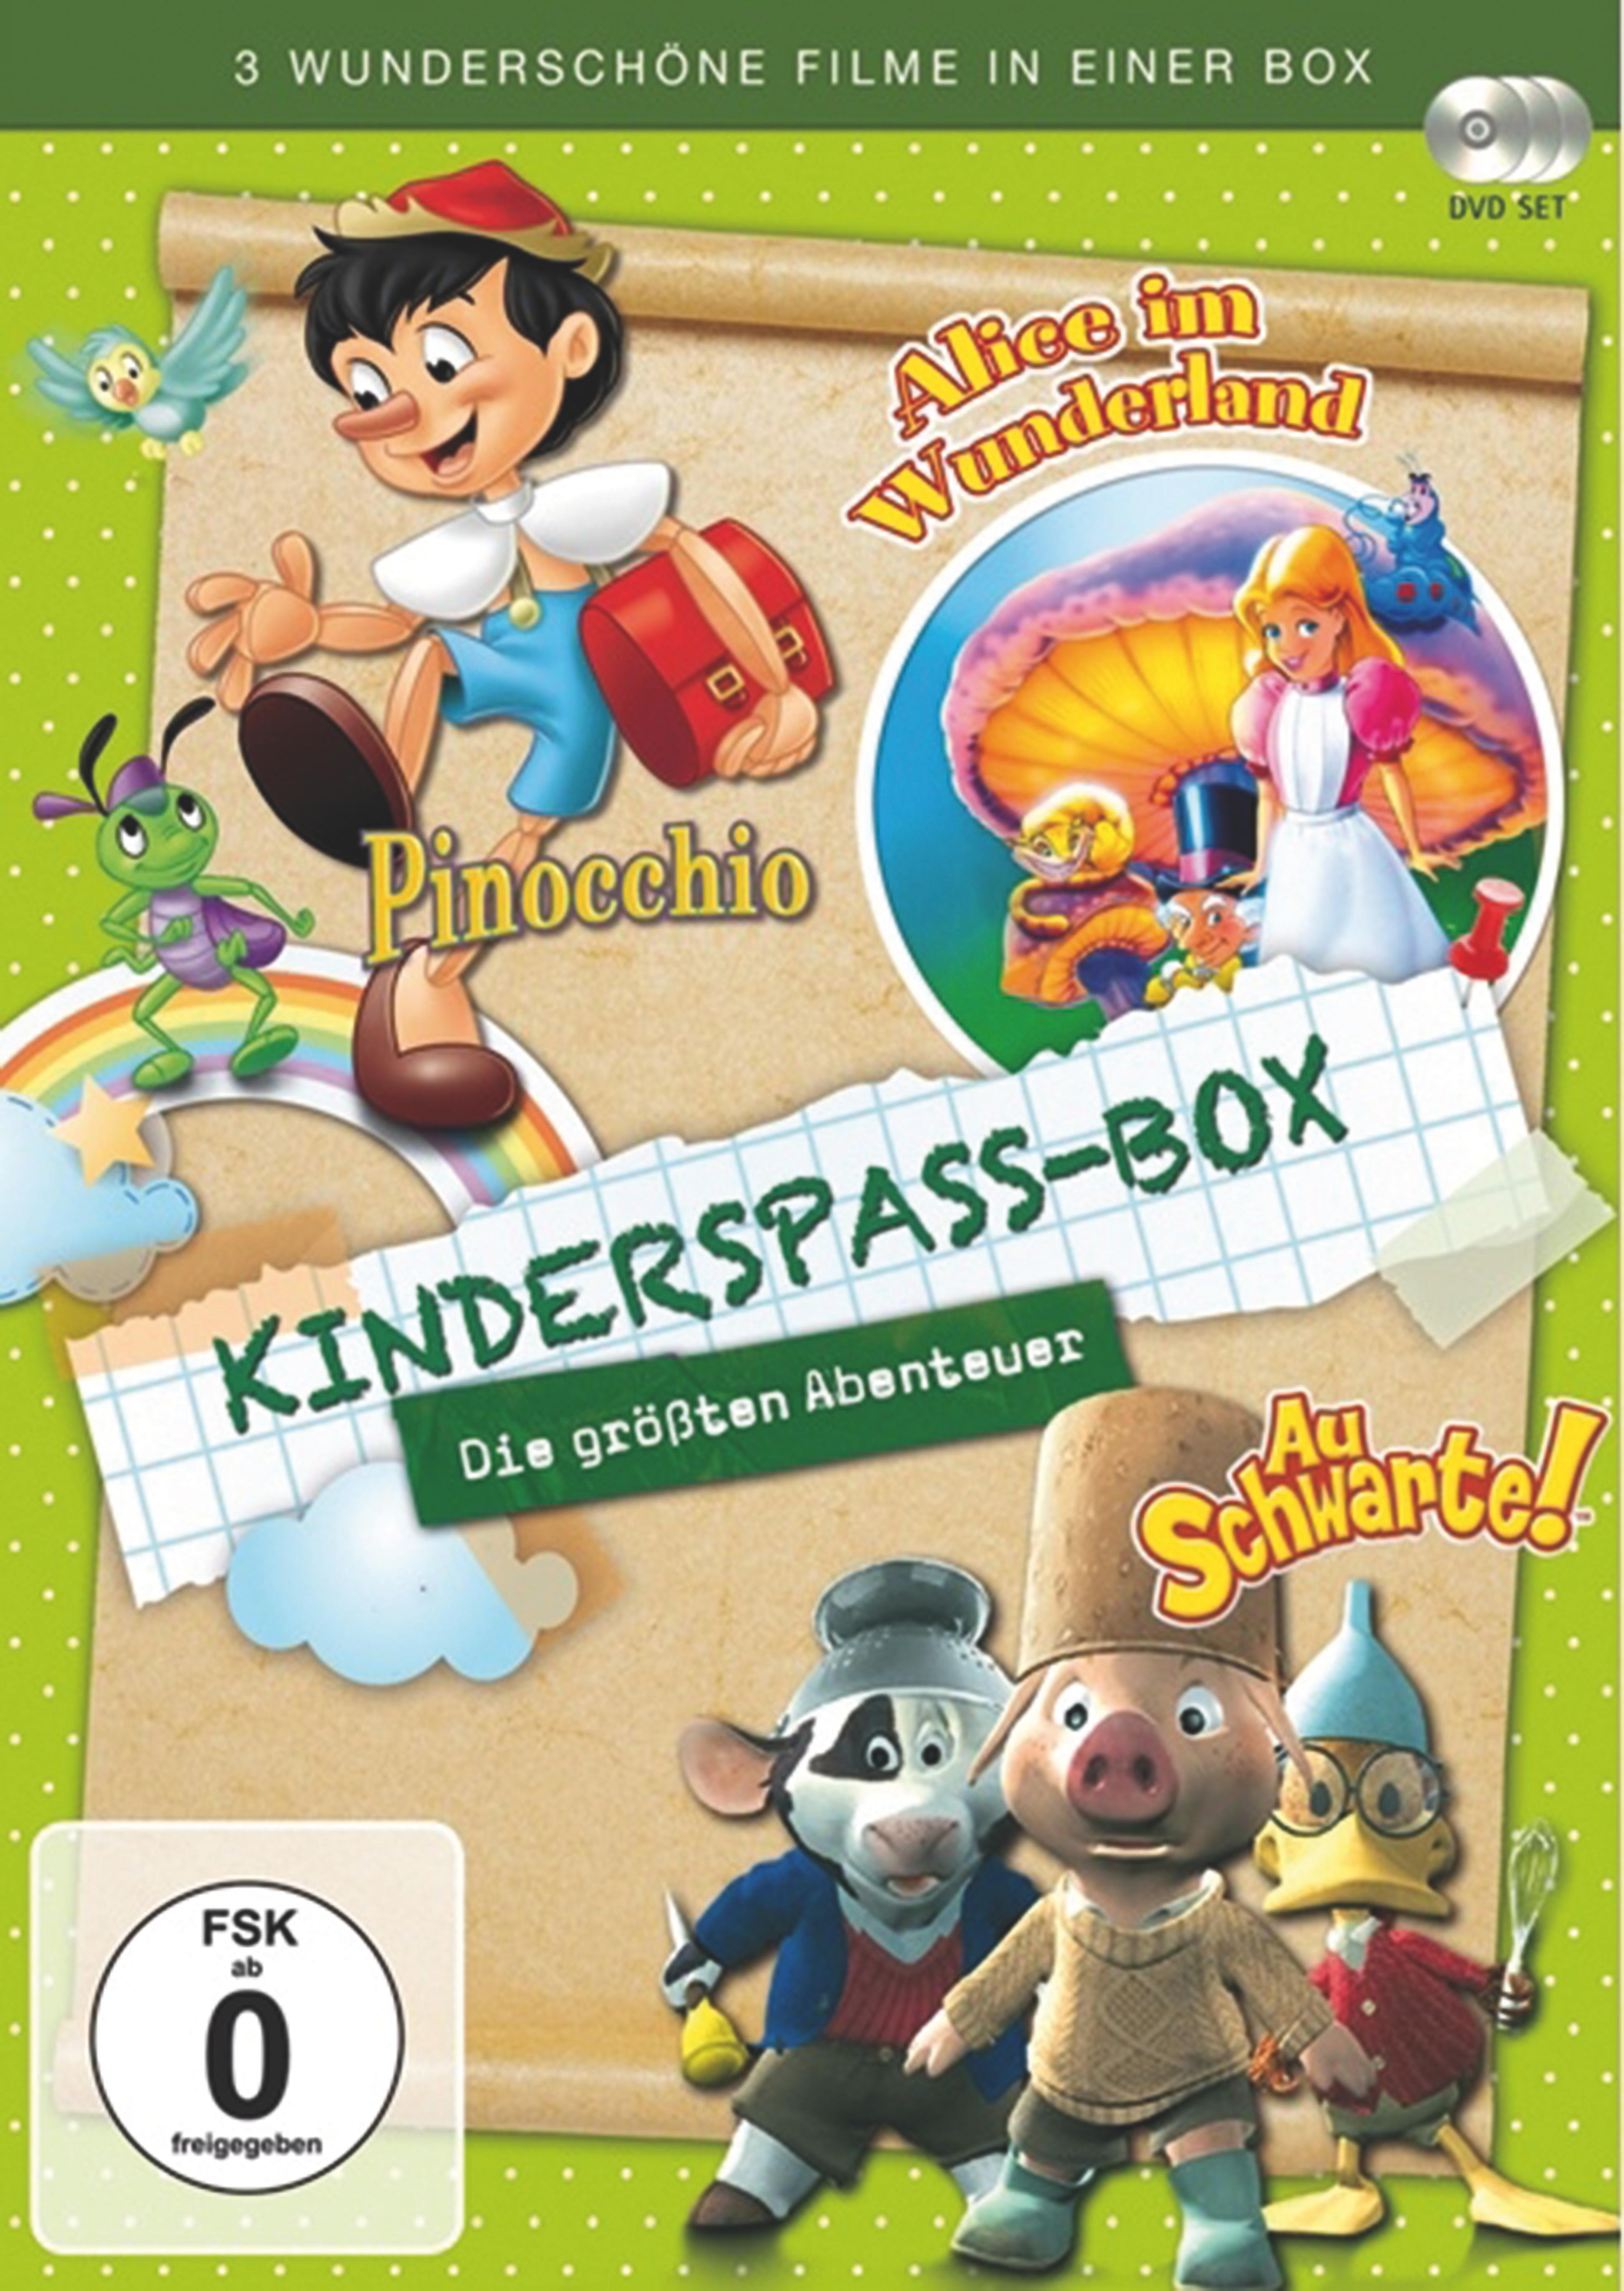 Kinderspass Box - Die DVD Abenteuer größten